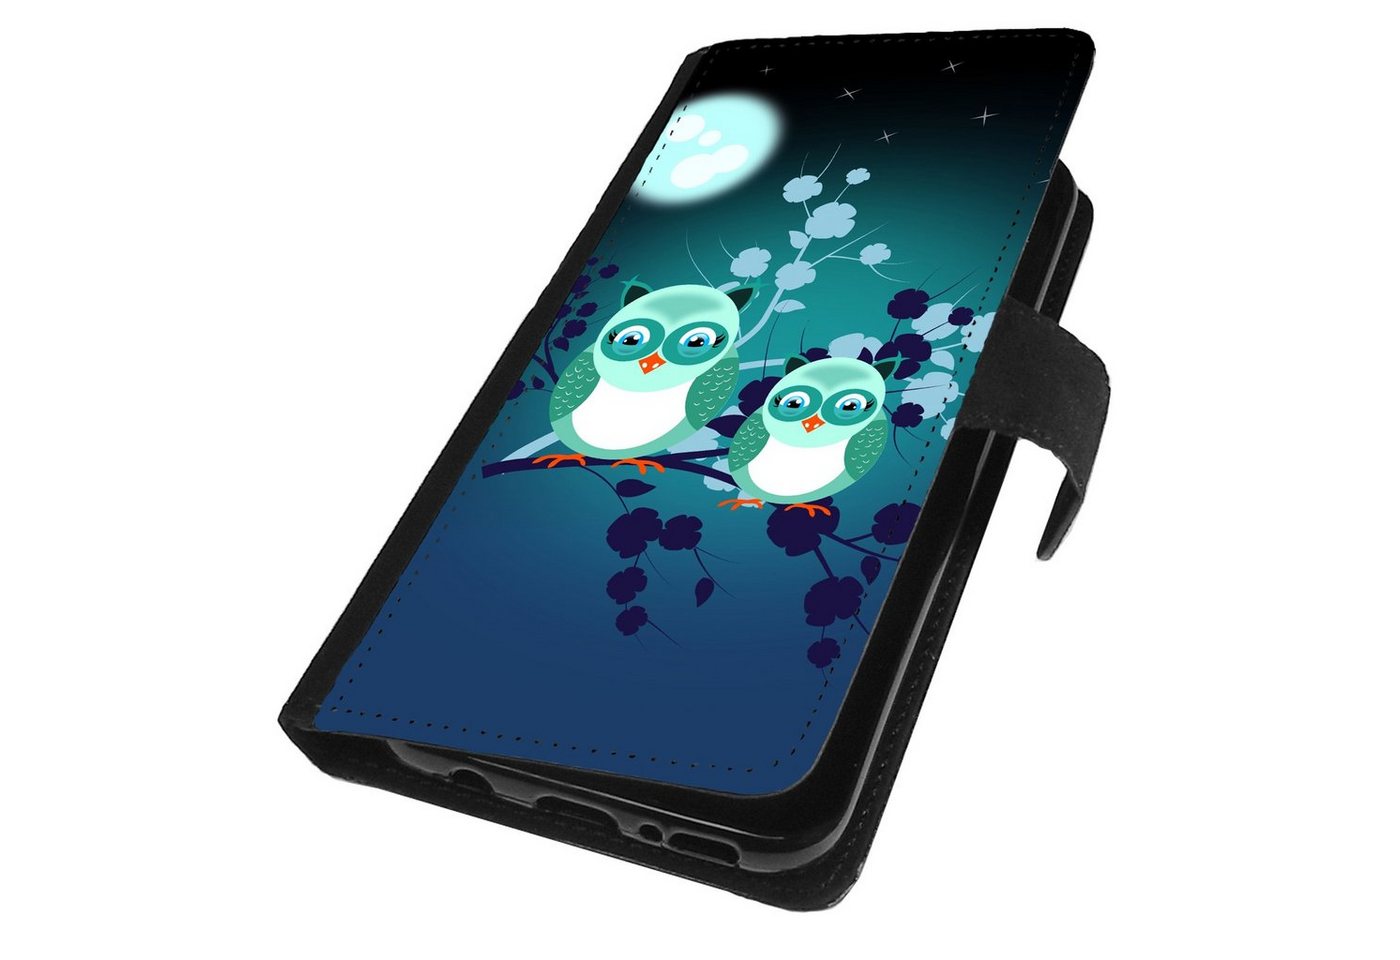 Traumhuelle Handyhülle Für Samsung Galaxy S21 Plus 5G / S21 Ultra 5G Hülle Motiv 42, Eulen Mond Blau Handy Tasche Schutzhülle Case Etui Cover von Traumhuelle